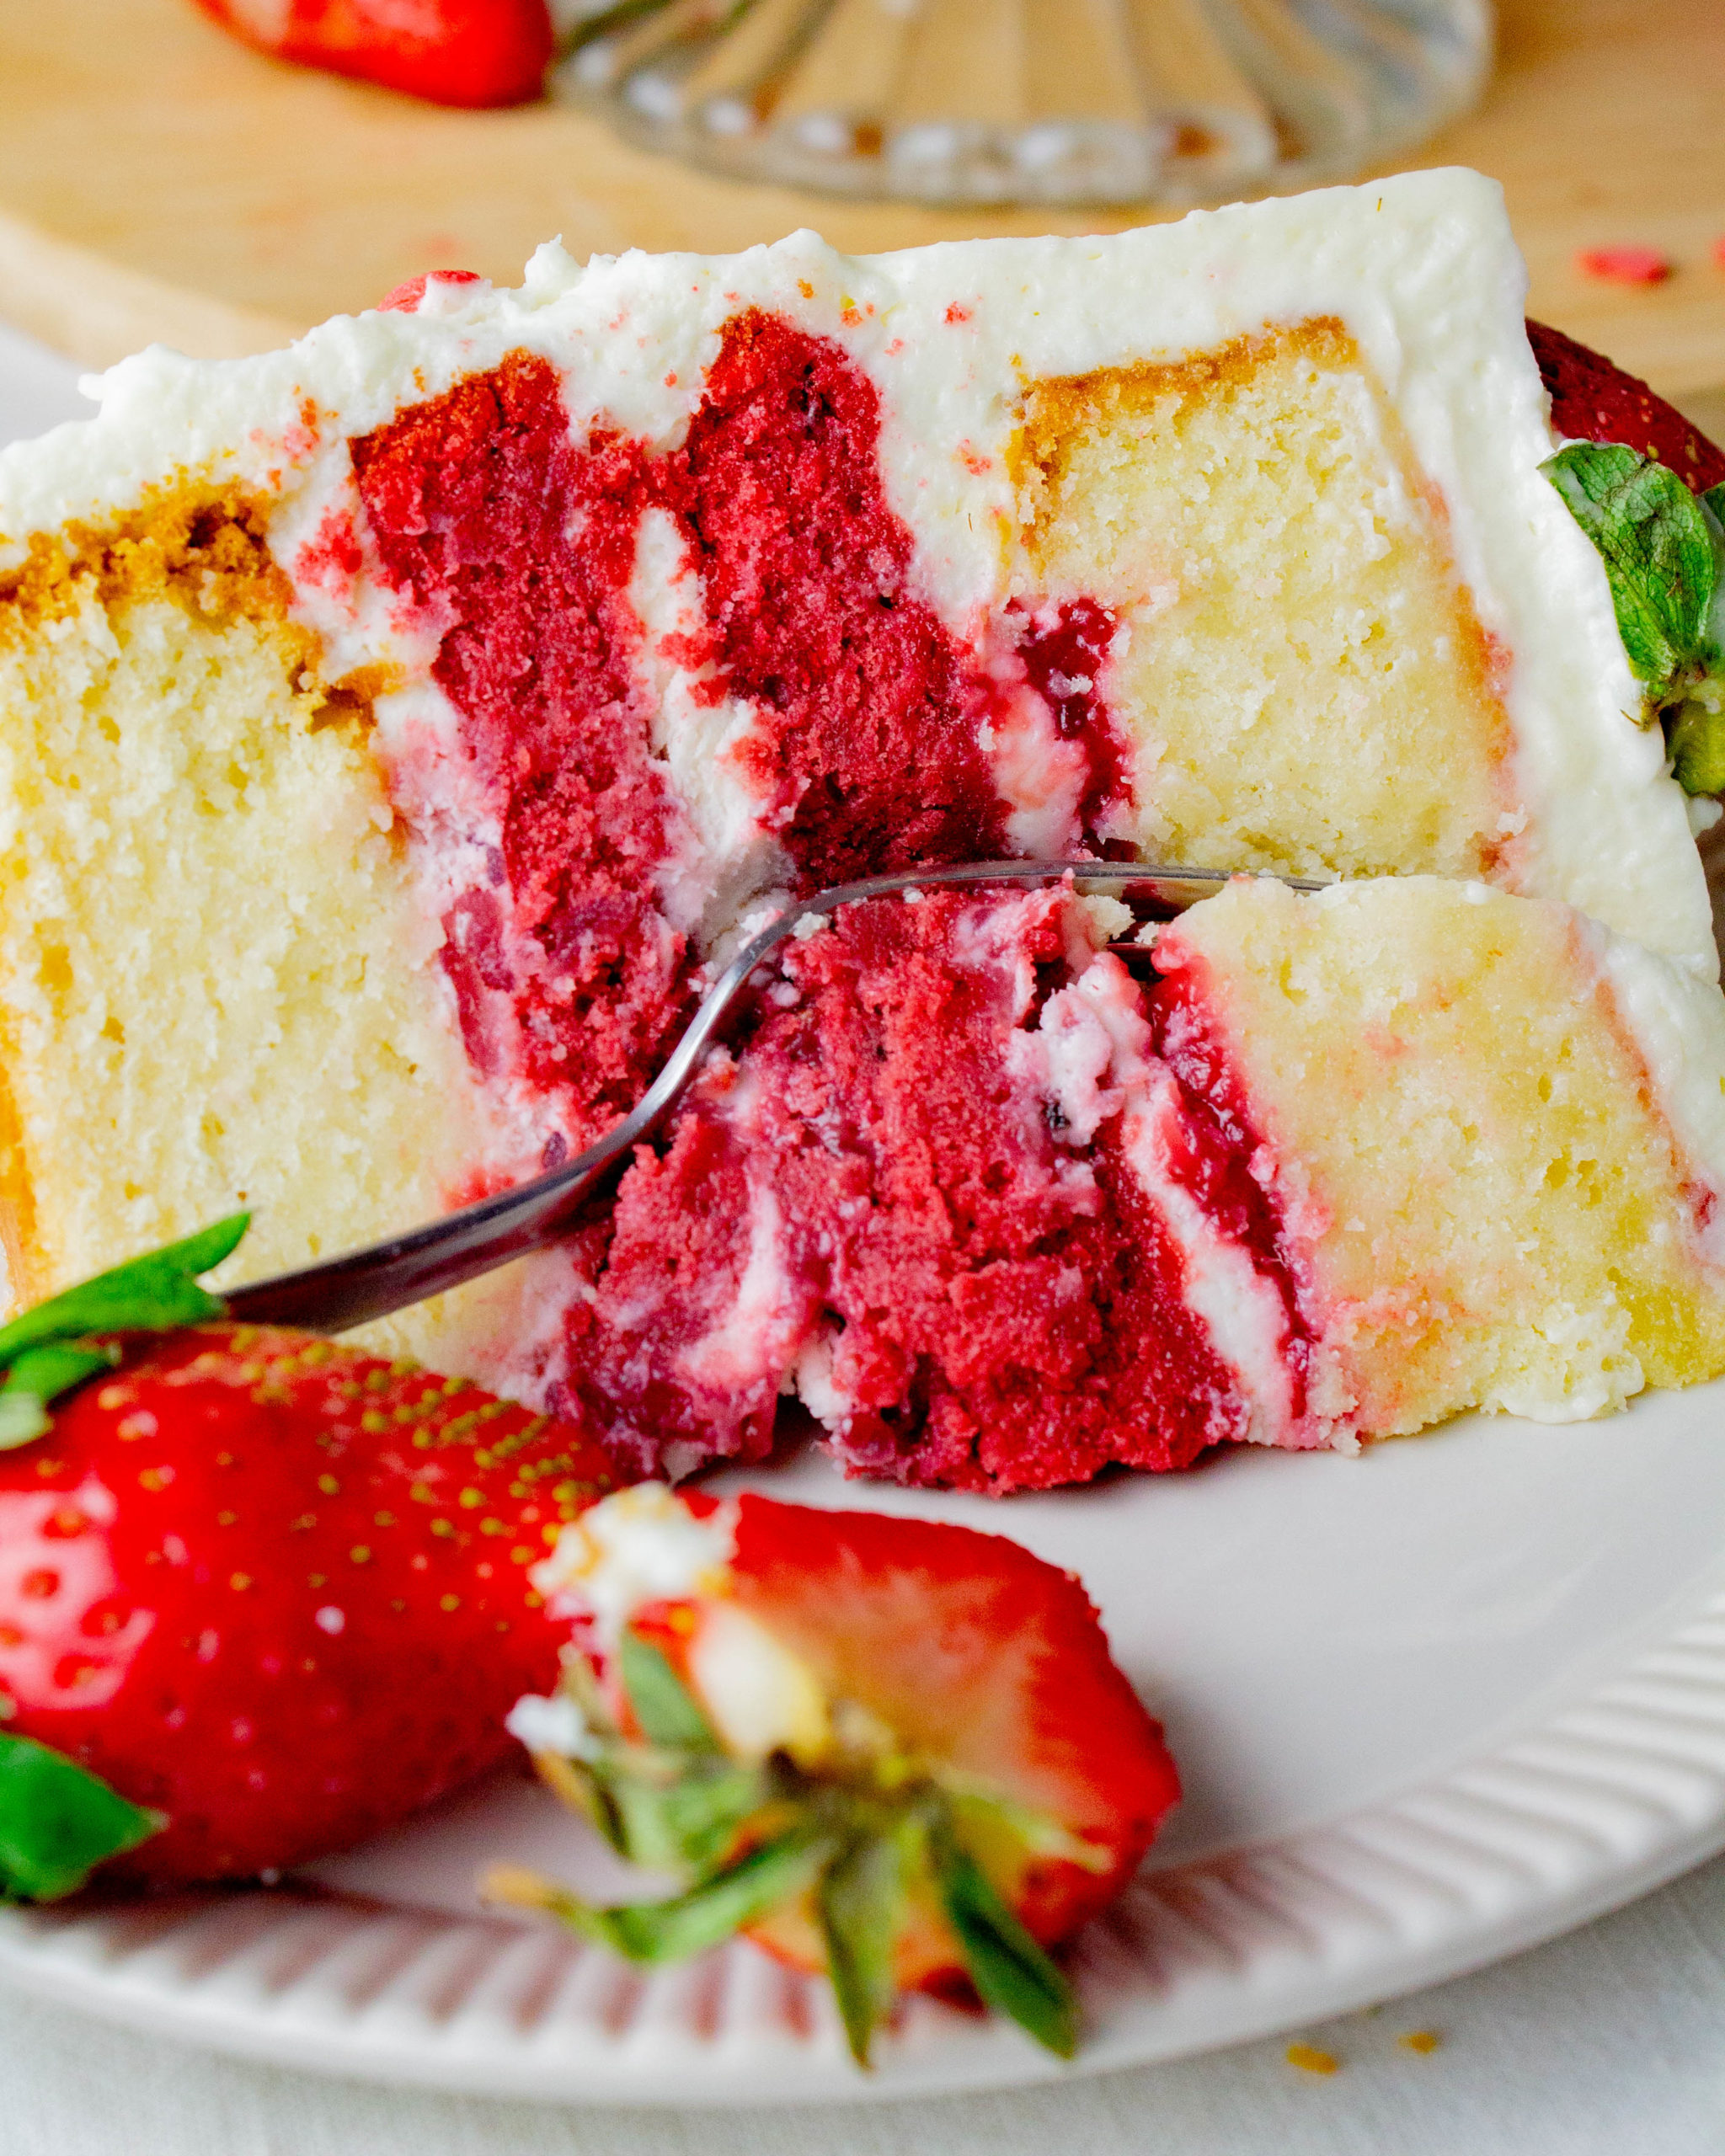 White Velvet Cake With Strawberries
